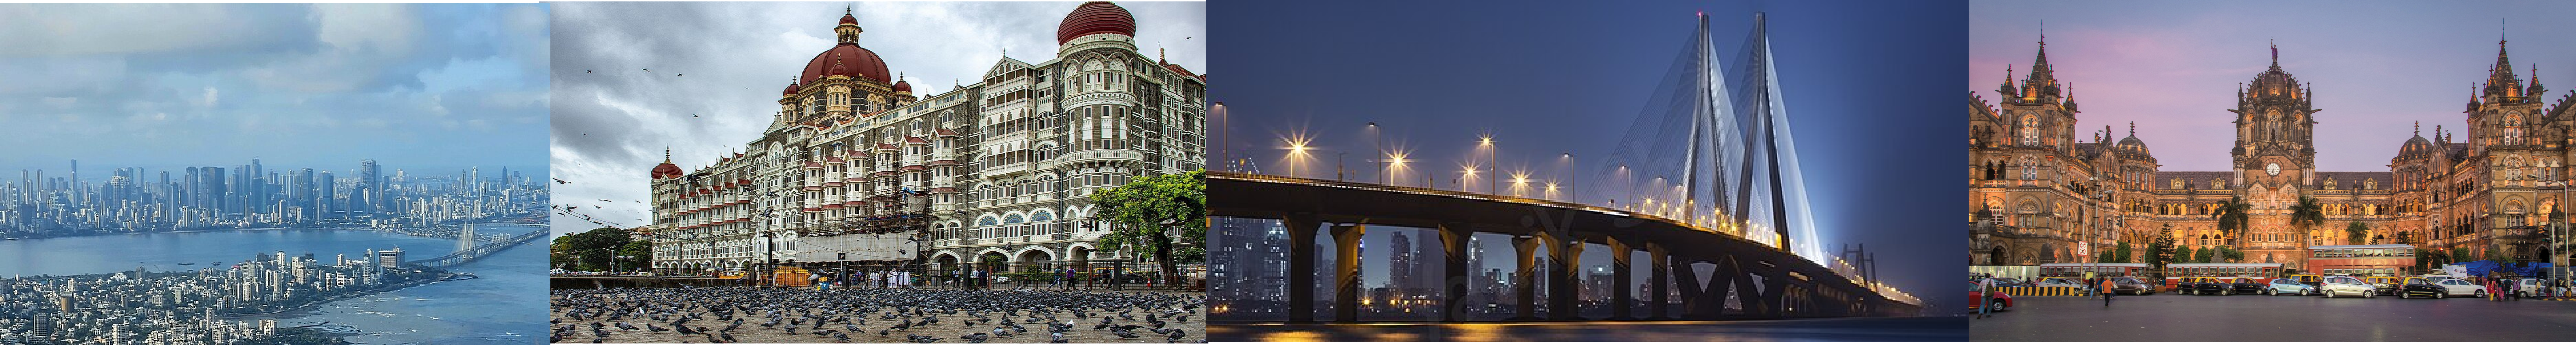 Mumbai images footer